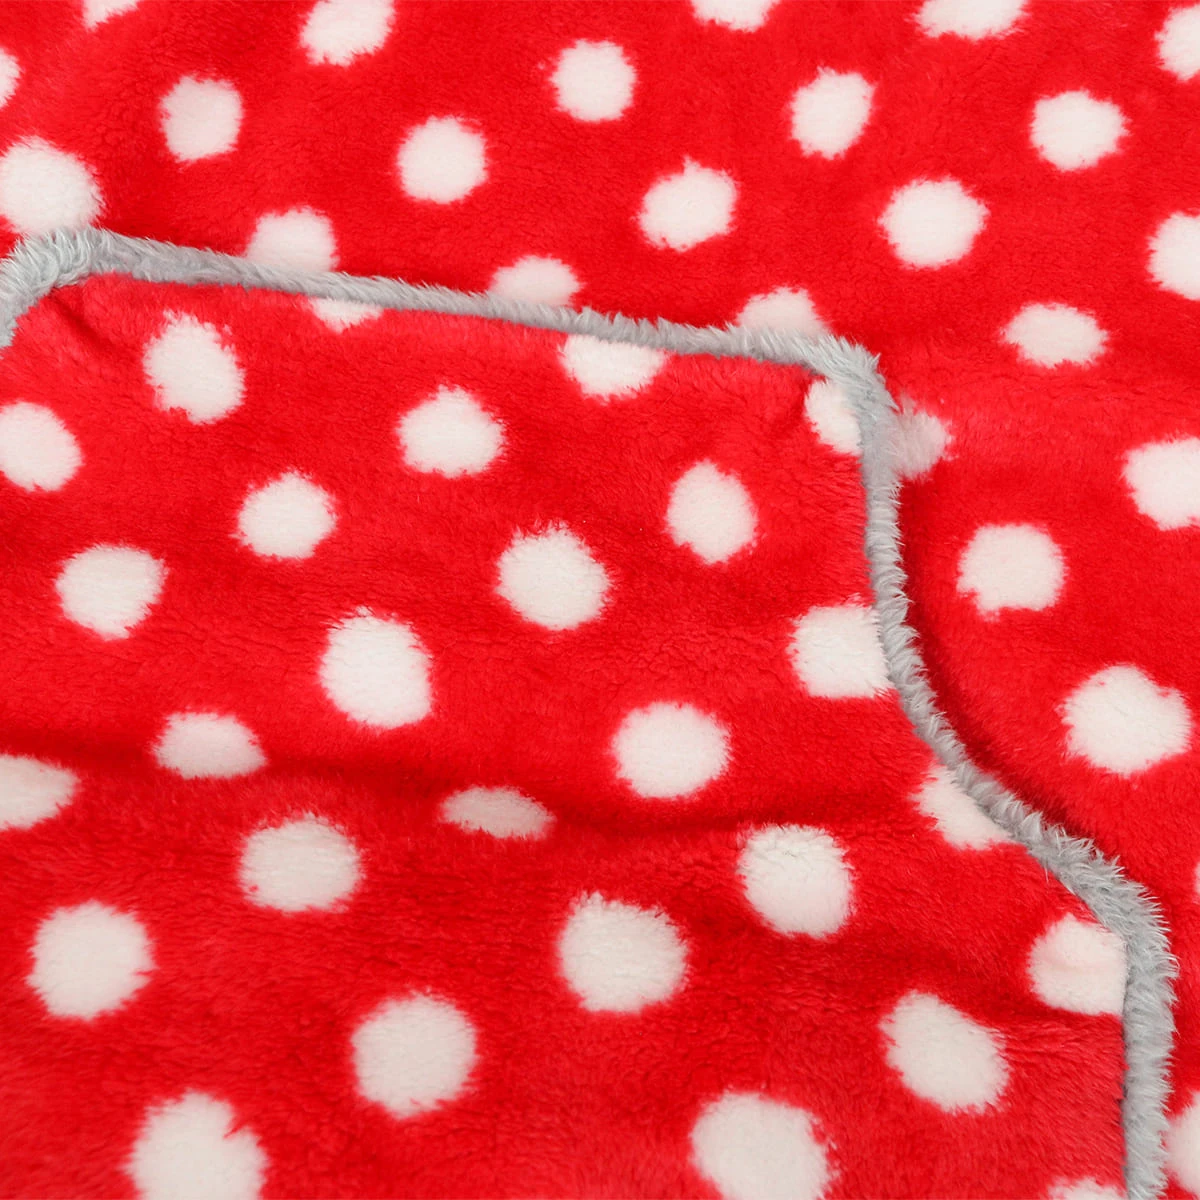 Printed Plush Pet Sleeping Bag (Red Whit Dot)